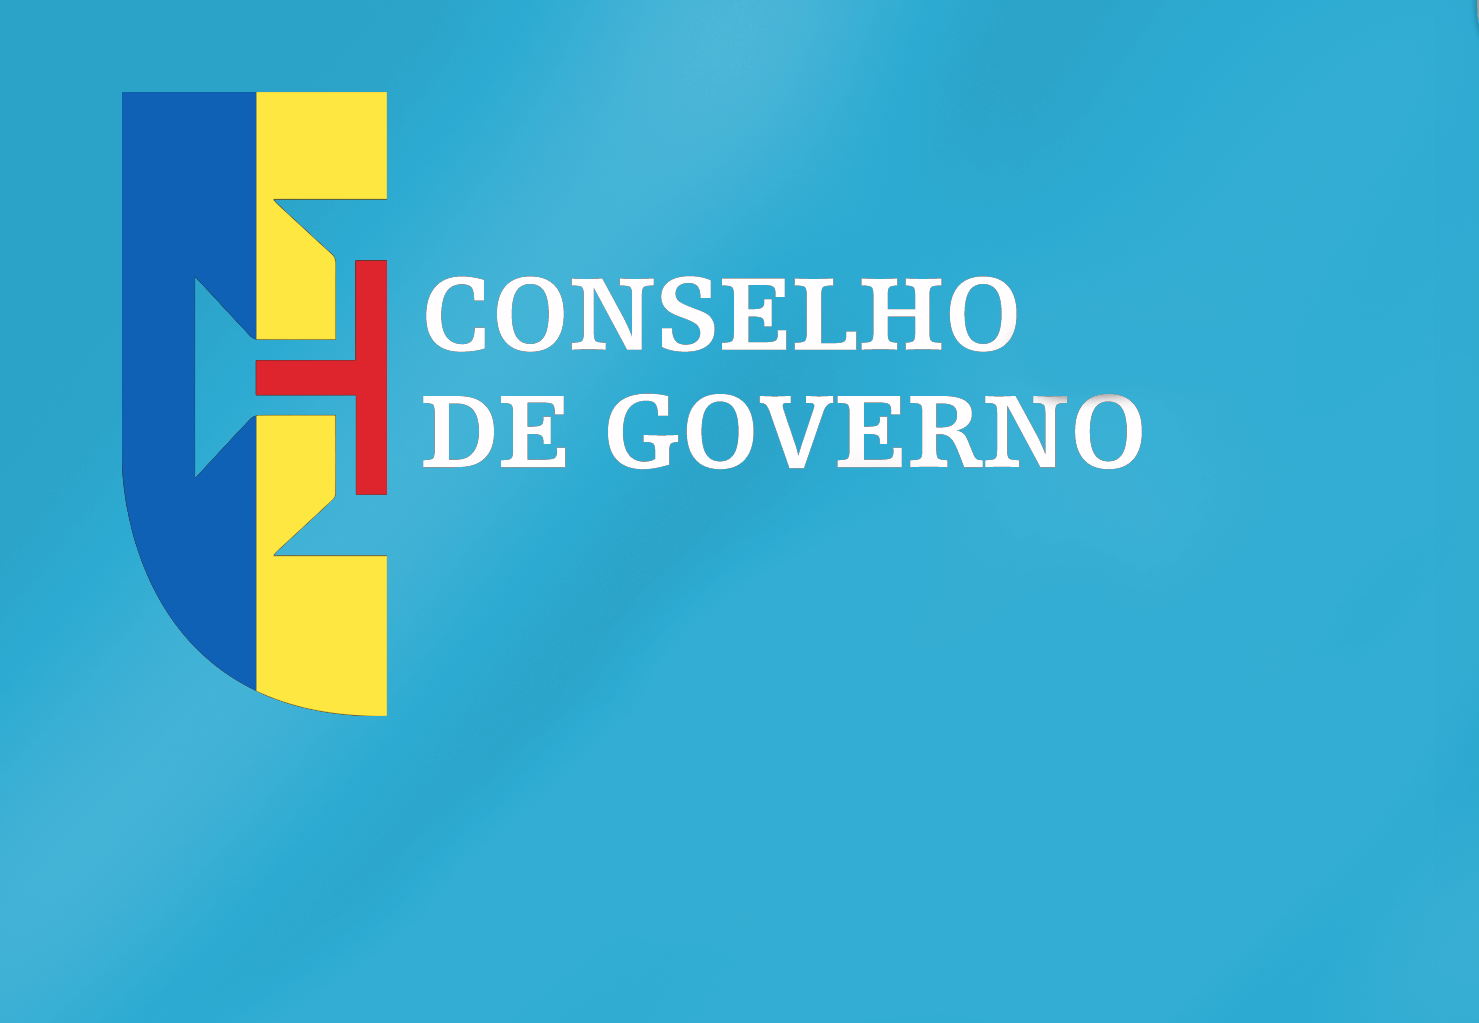 Conclusões Conselho de Governo - 03 de agosto de 2022